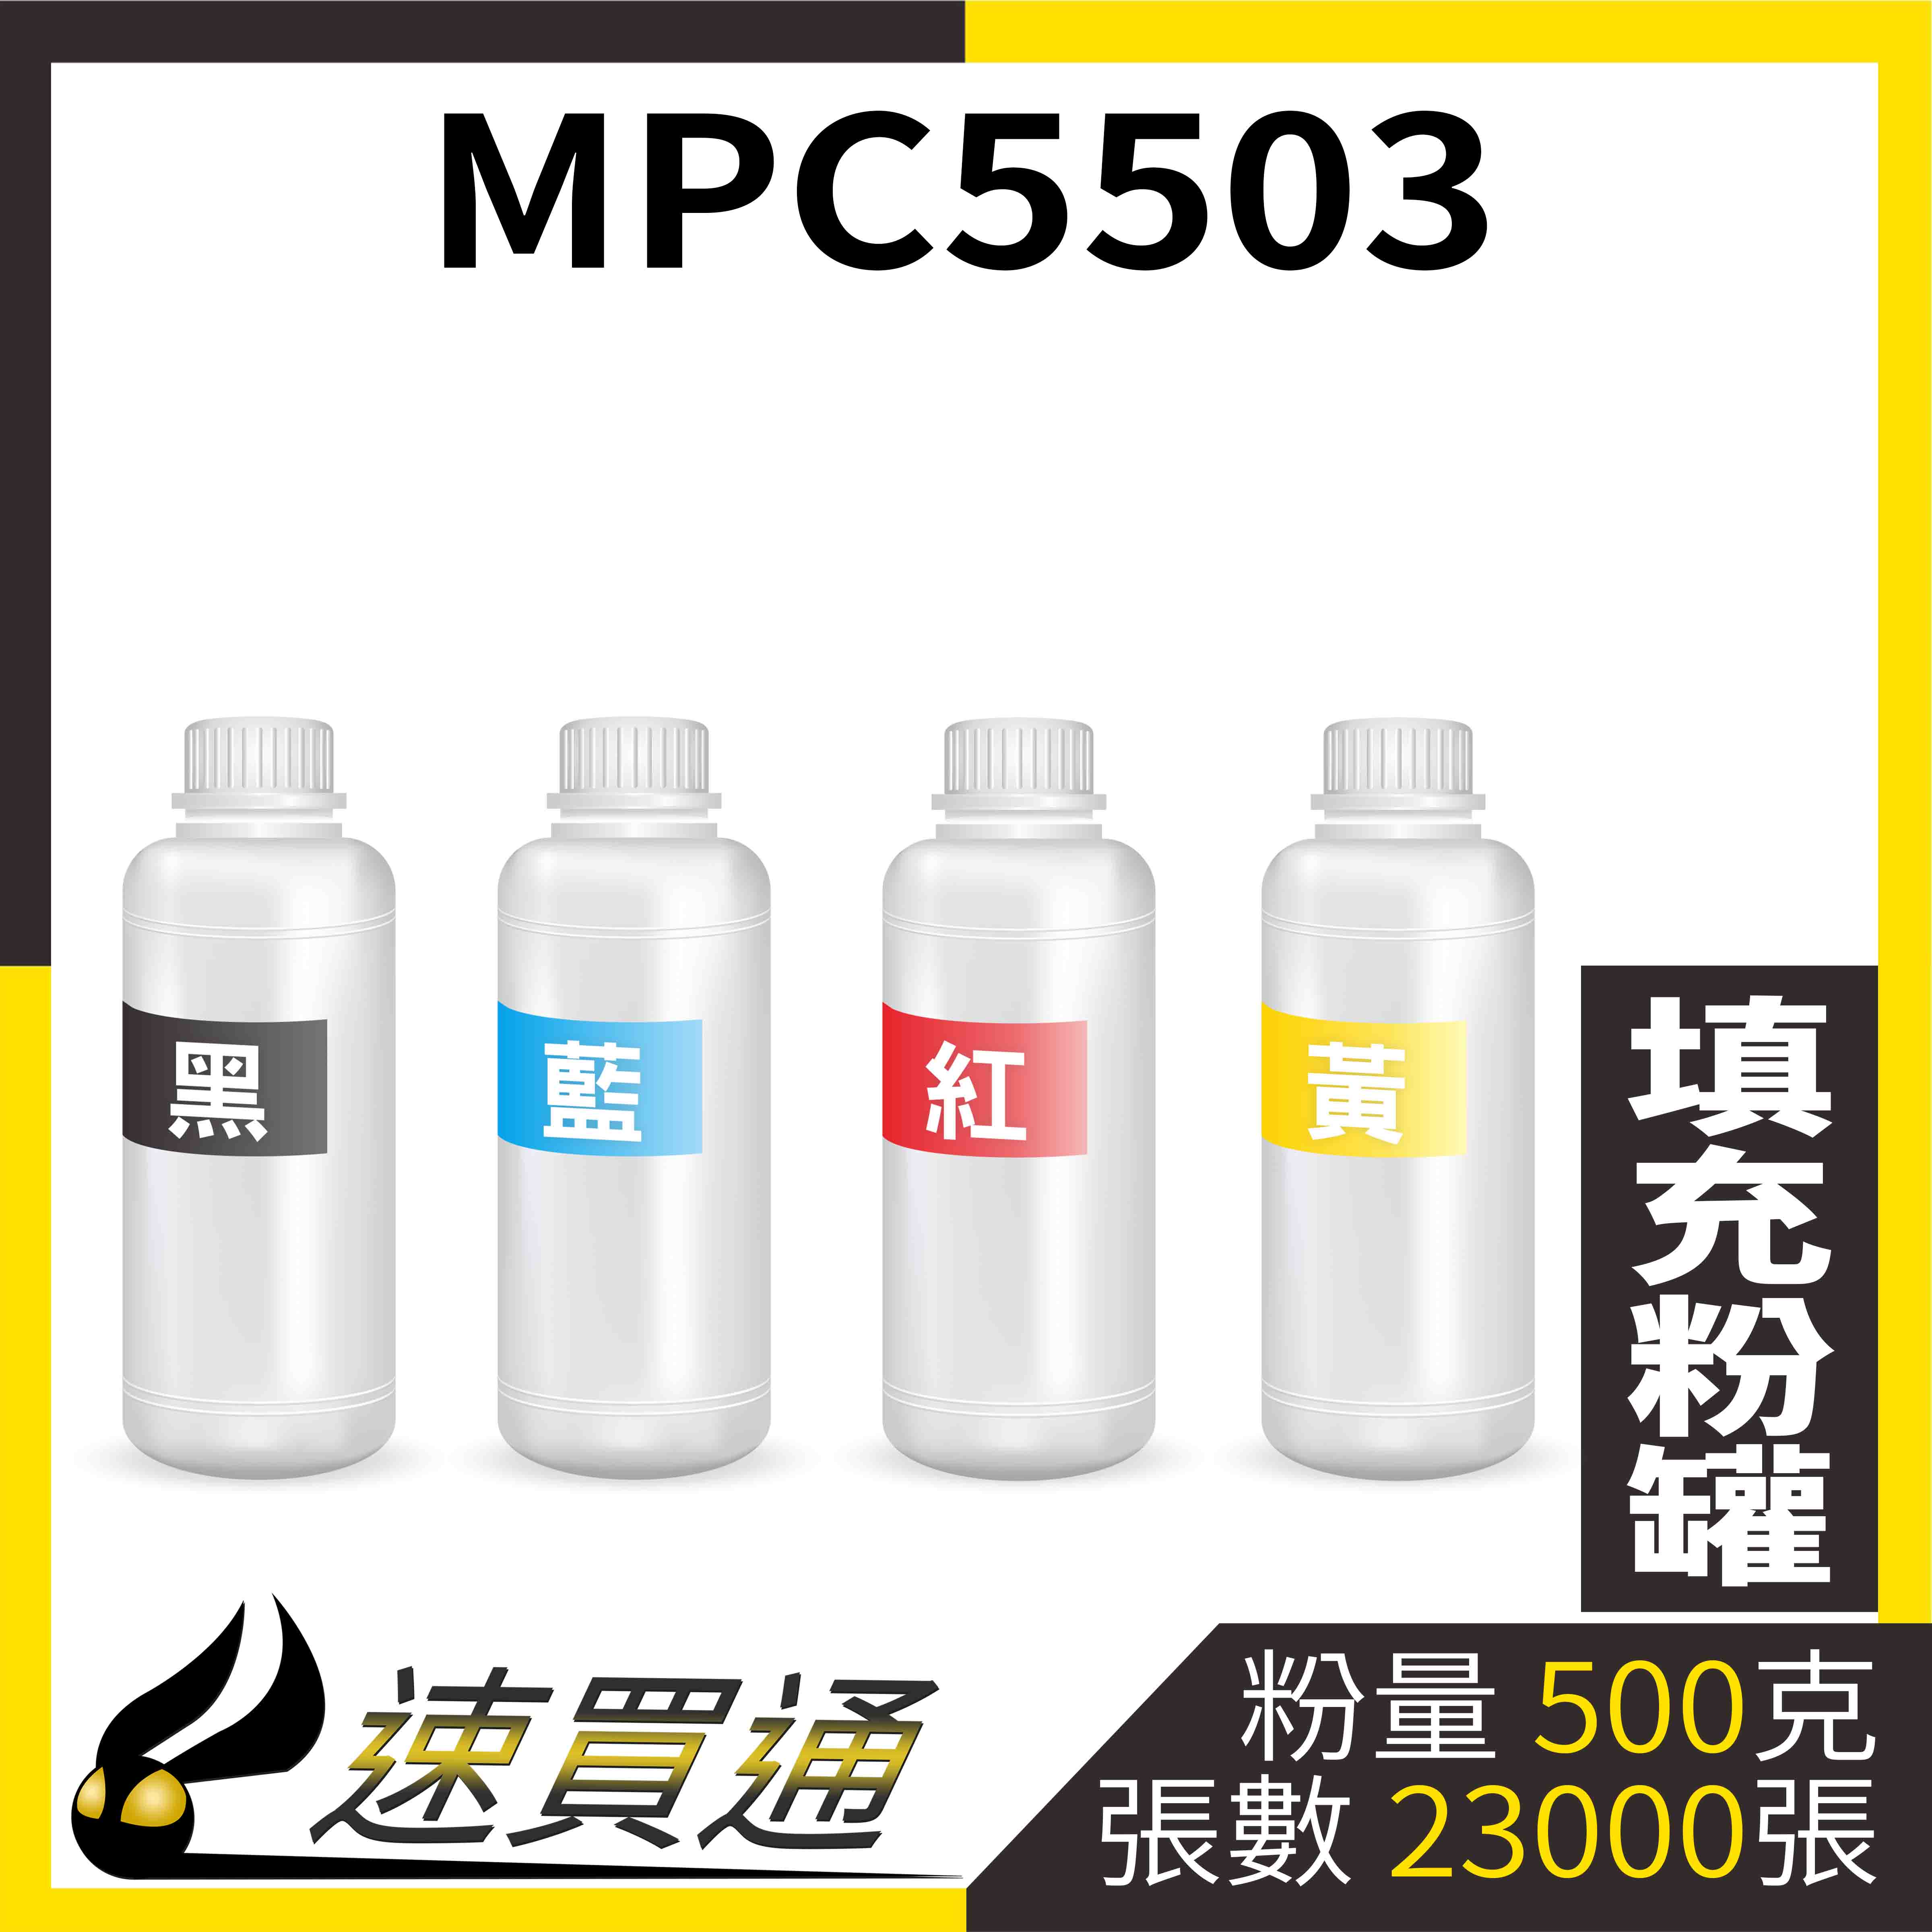 【速買通】RICOH MPC5503 四色綜合 填充式碳粉罐